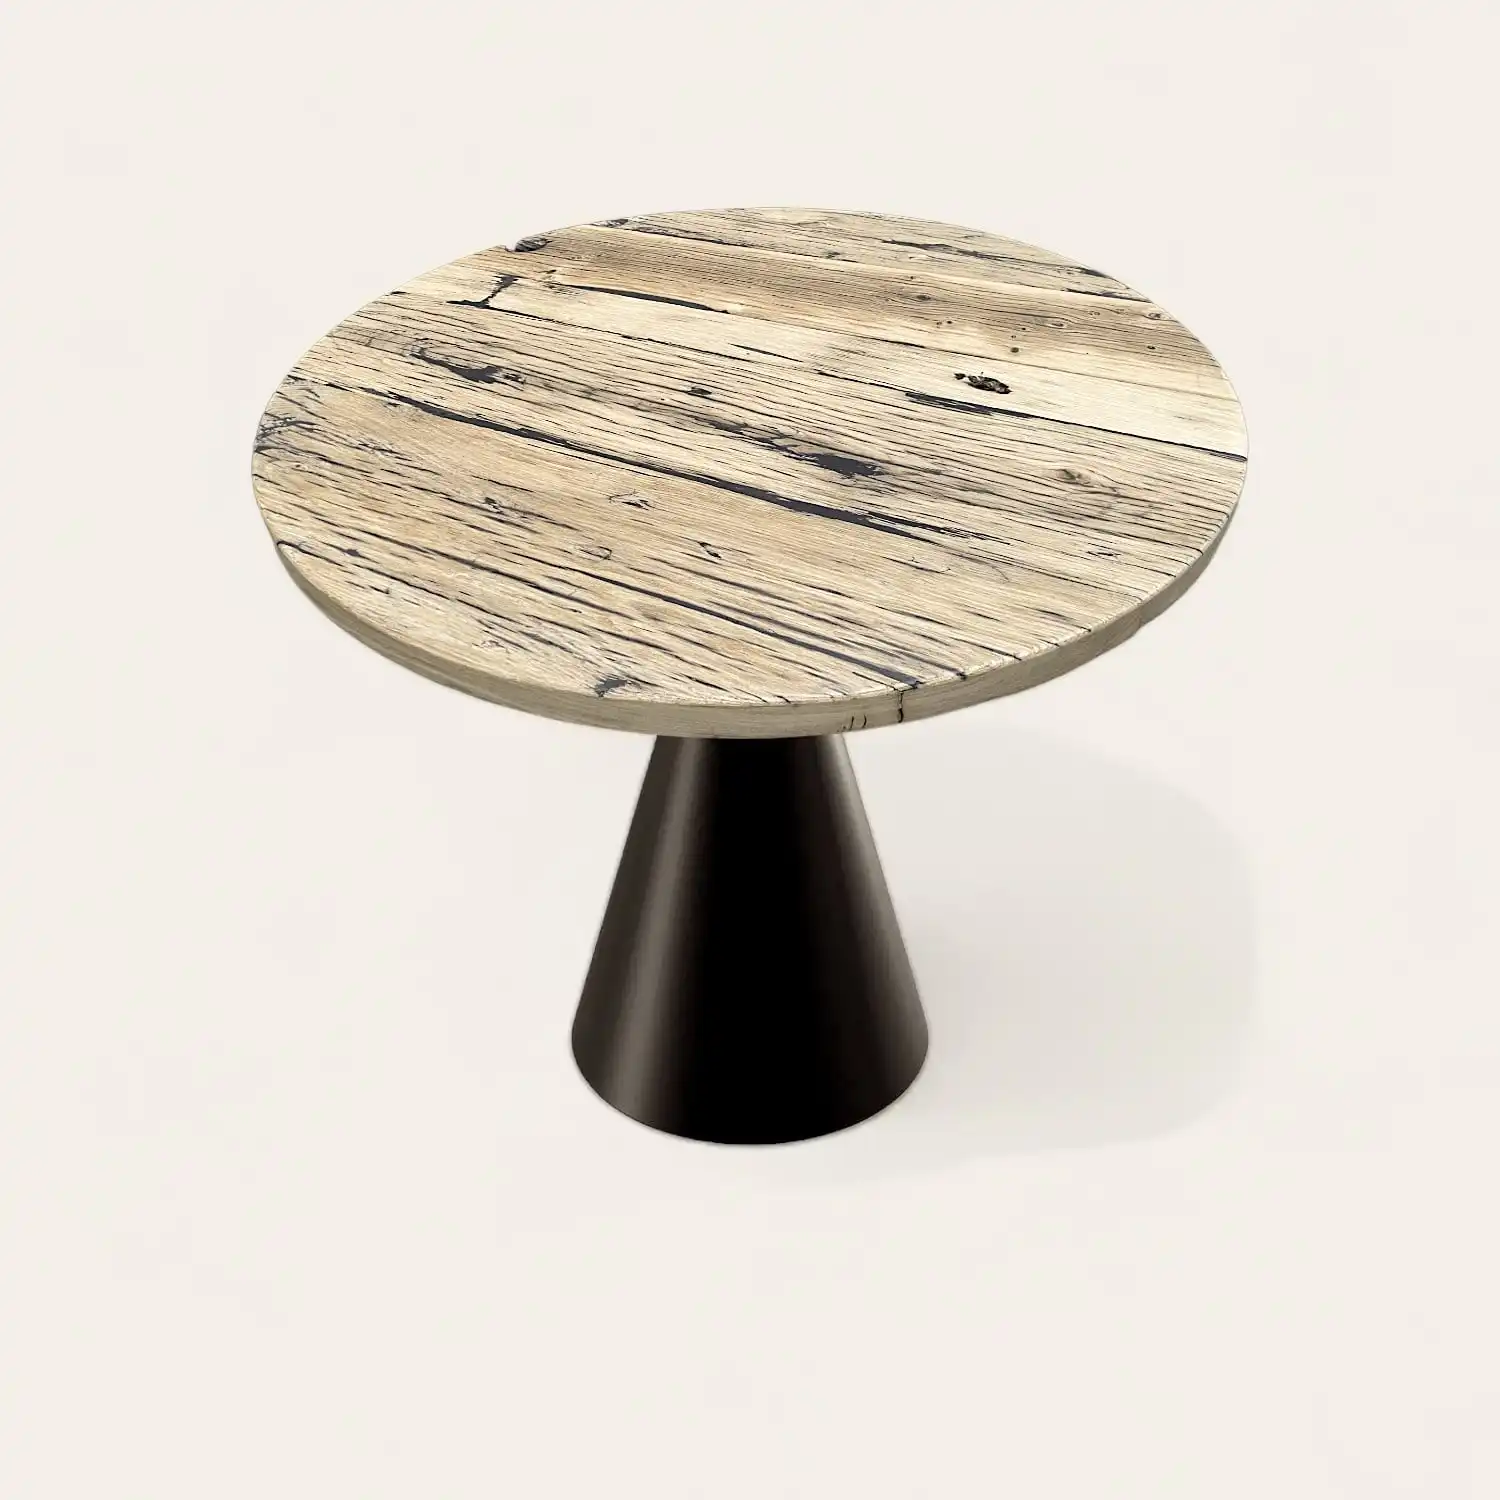  Une table ronde rustique en bois avec un piètement noir. 